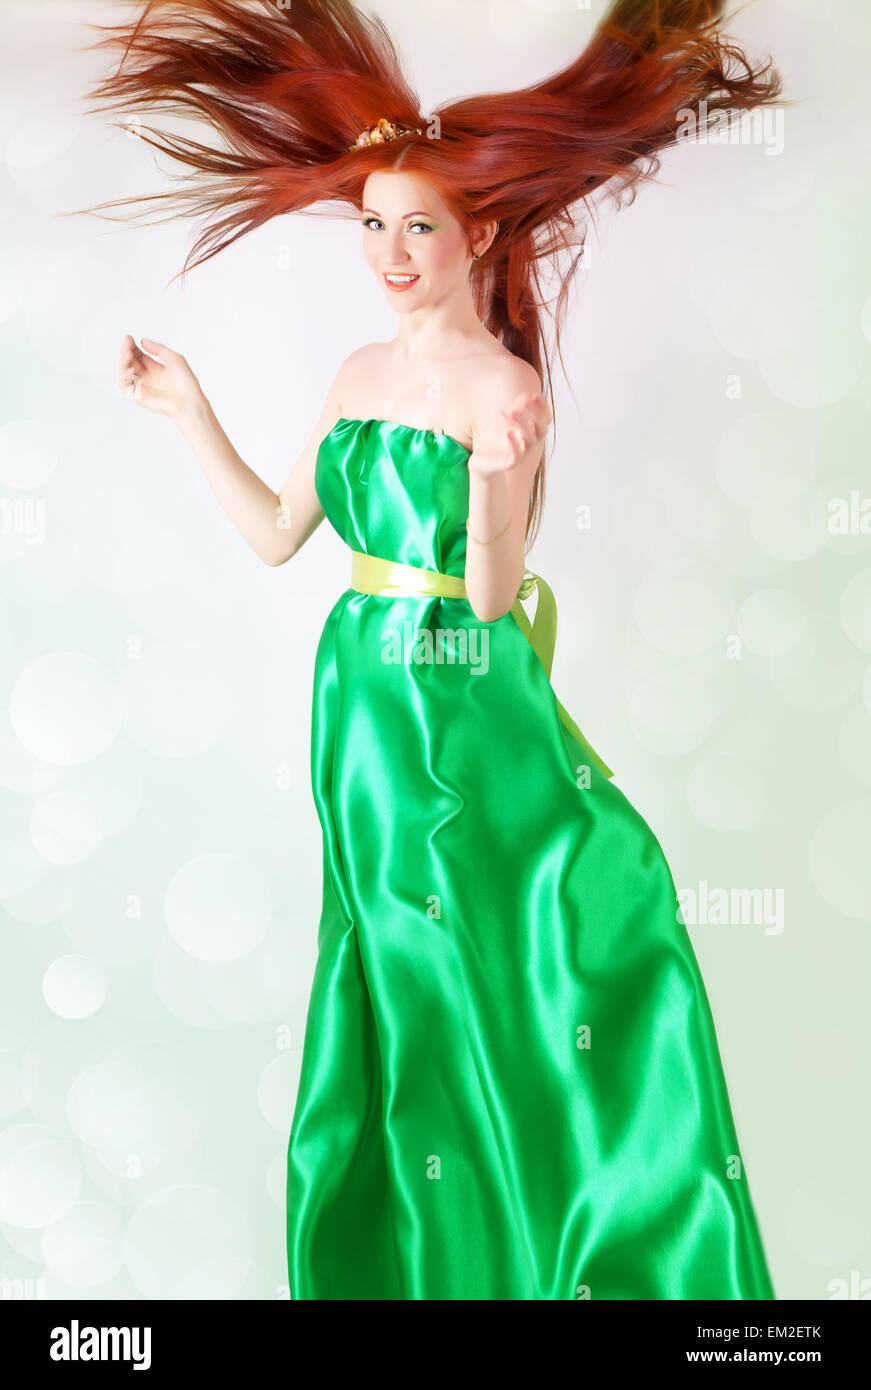 Porträt von schönen Rothaarigen Mädchen in ein grünes Kleid mit wallendem  Haar Stockfotografie - Alamy